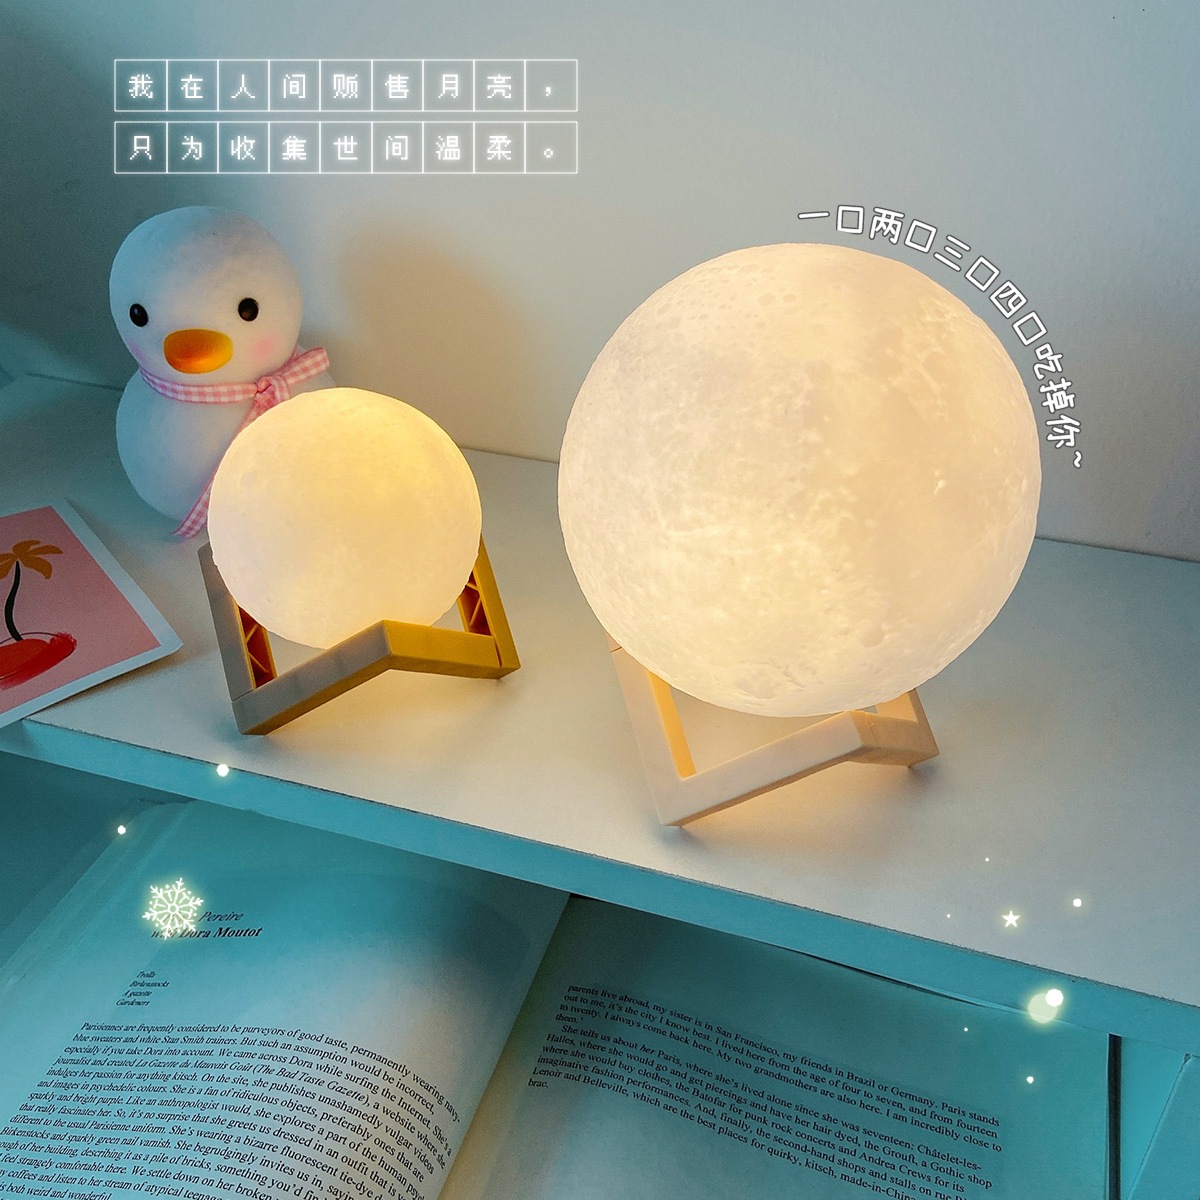 創意月球造型小夜燈 居家裝飾必備床頭燈 創意造型小夜燈 居家裝飾品